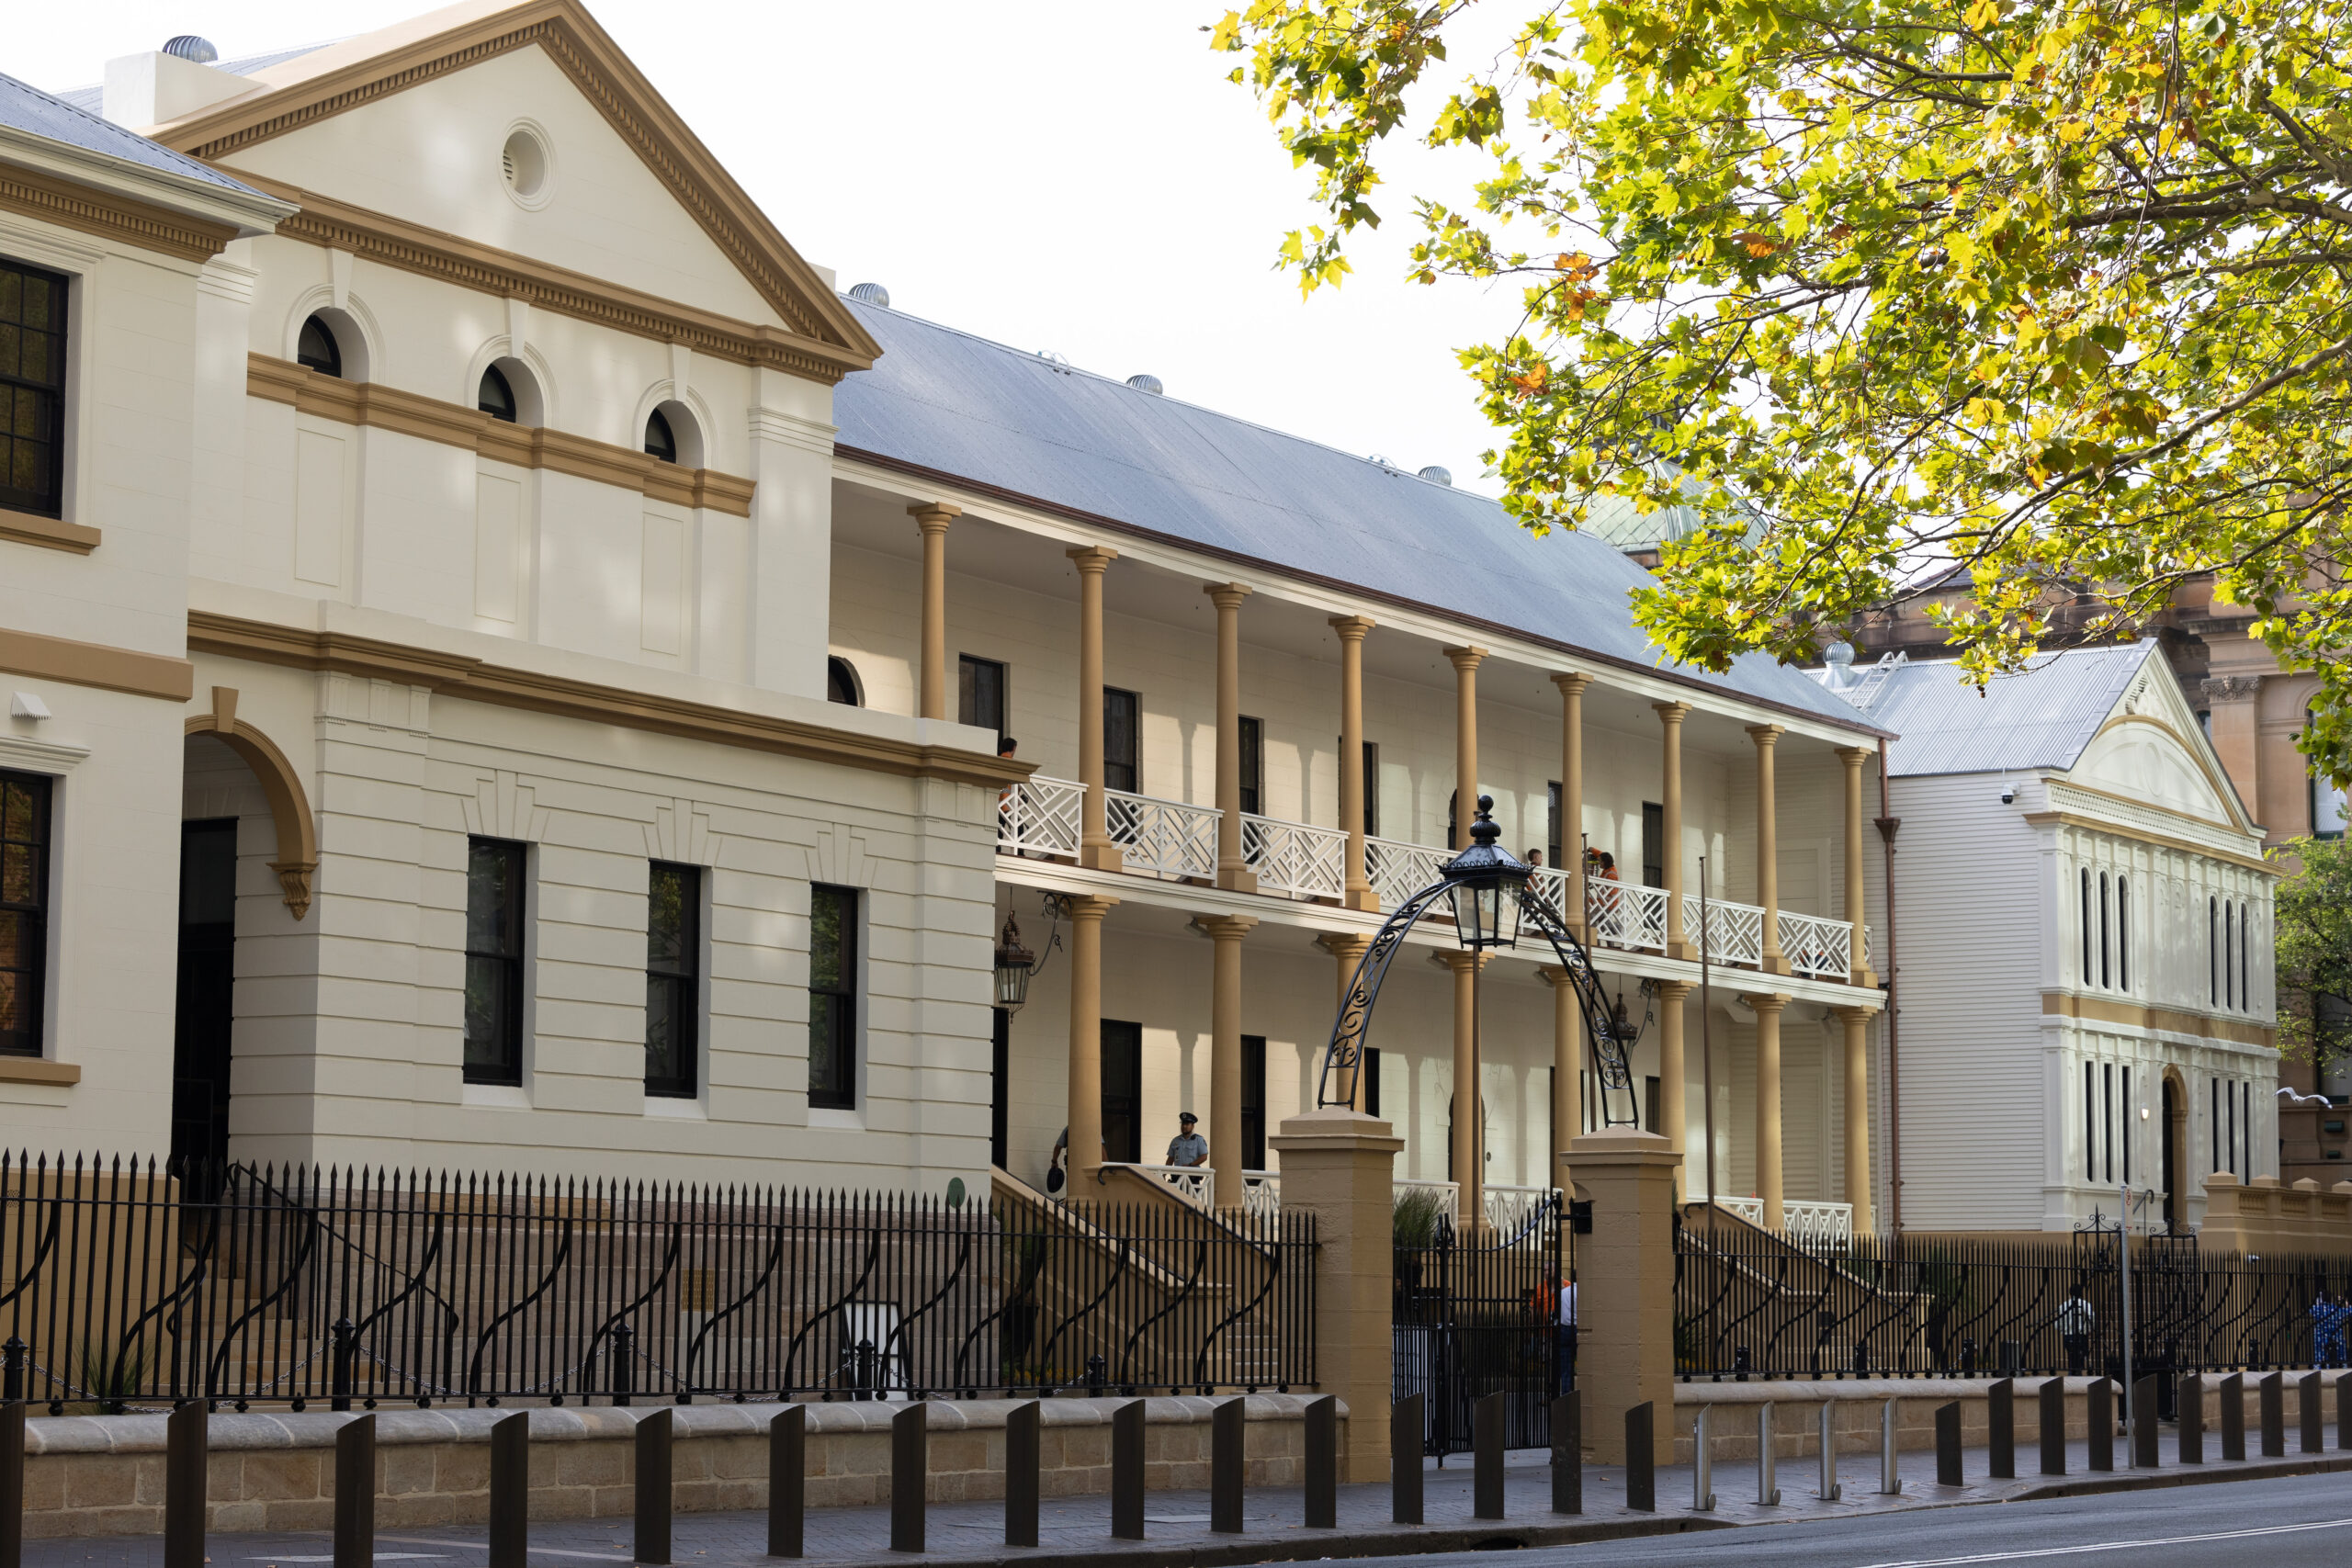 NSW Parliament Facade